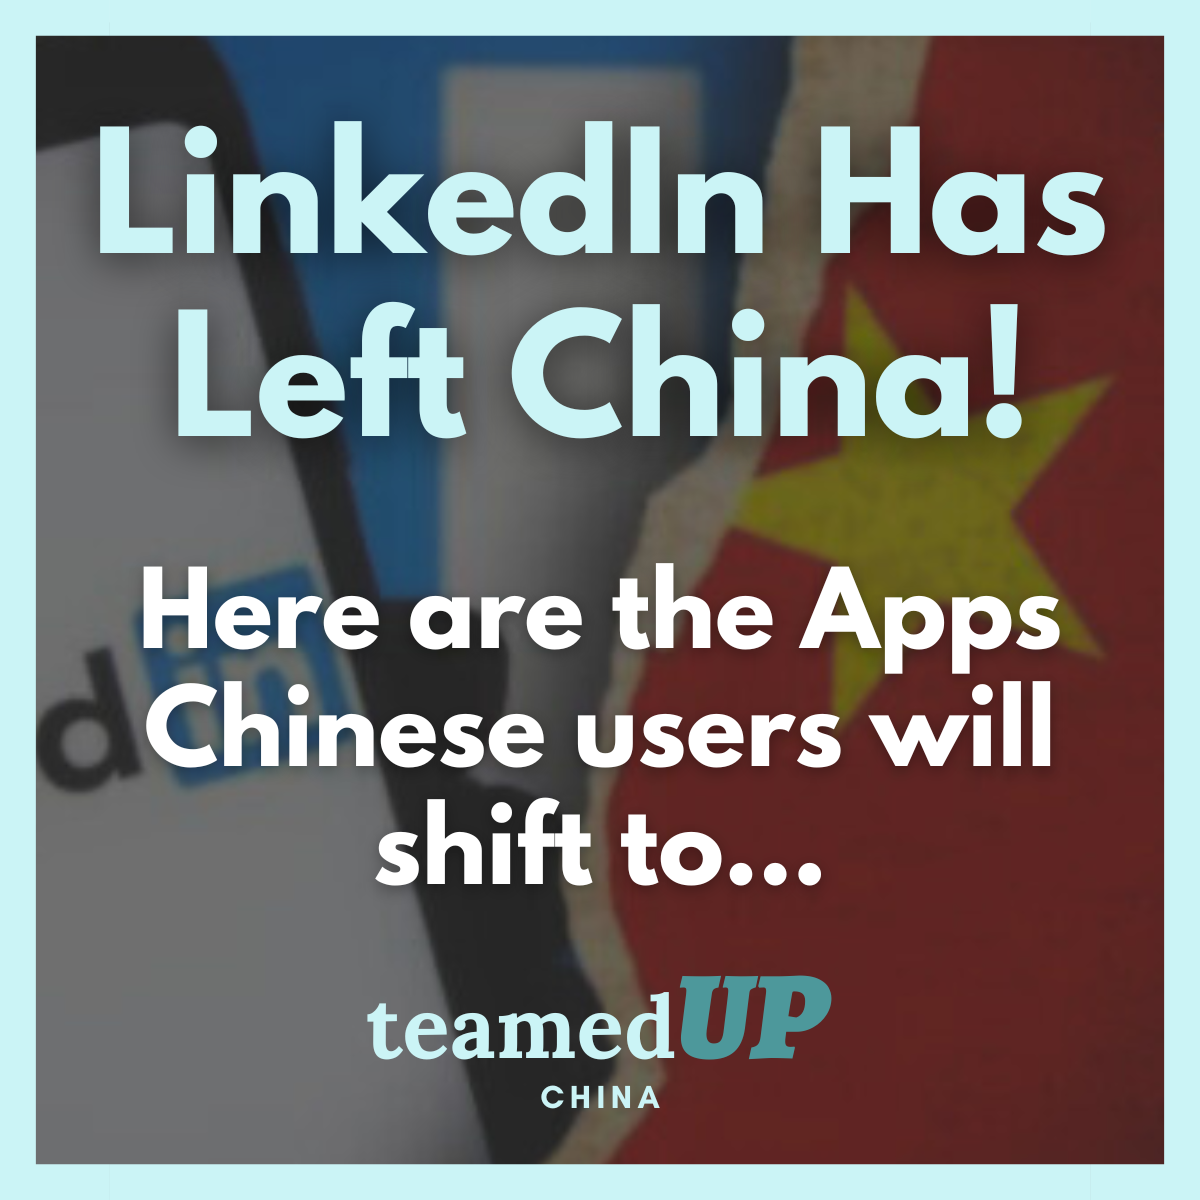 LinkedIn Has Left China